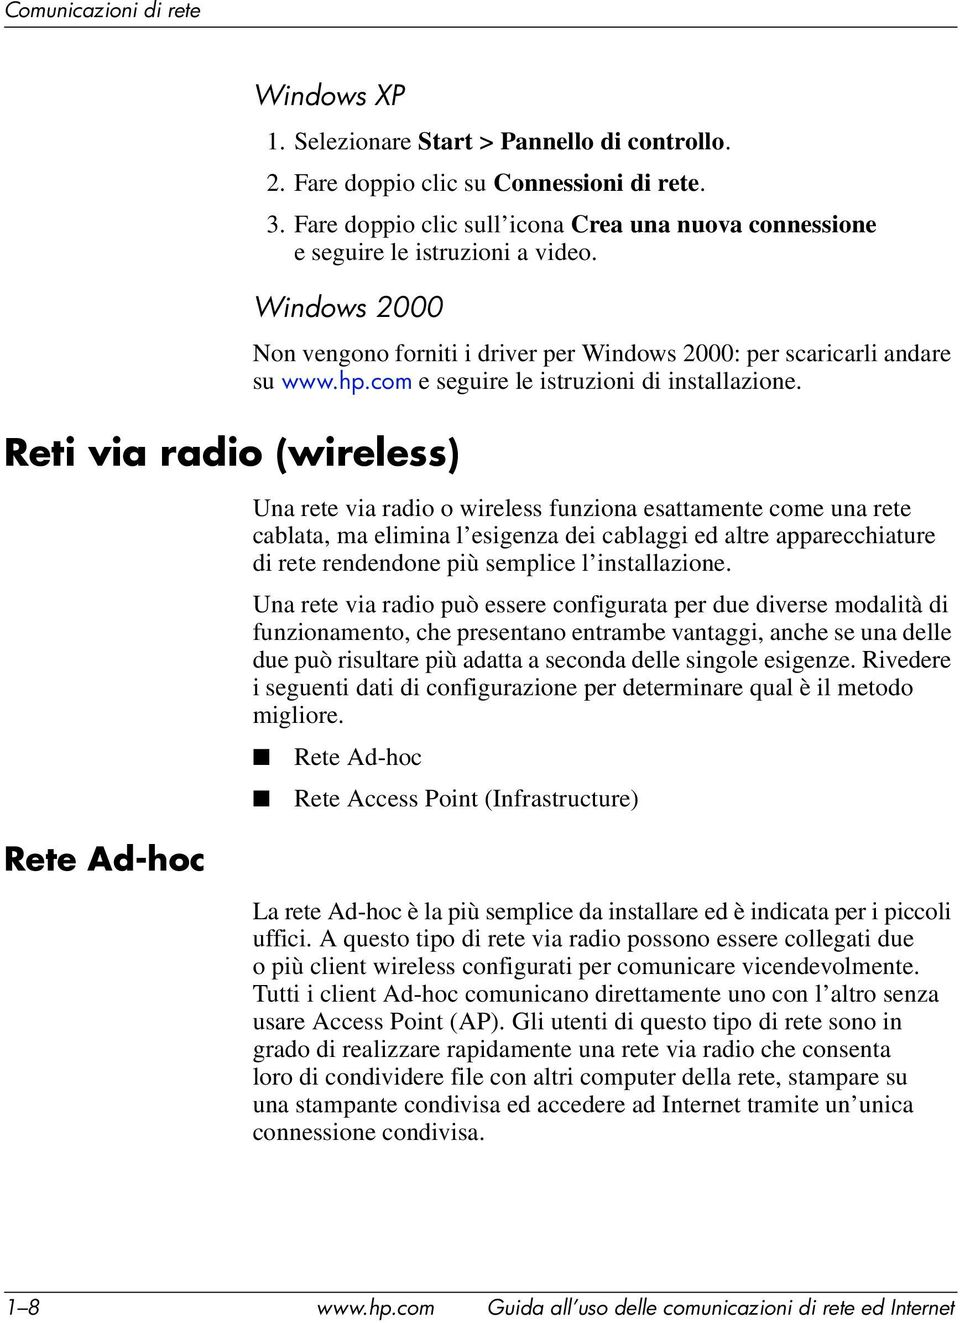 Windows 2000 Reti via radio (wireless) Non vengono forniti i driver per Windows 2000: per scaricarli andare su www.hp.com e seguire le istruzioni di installazione.